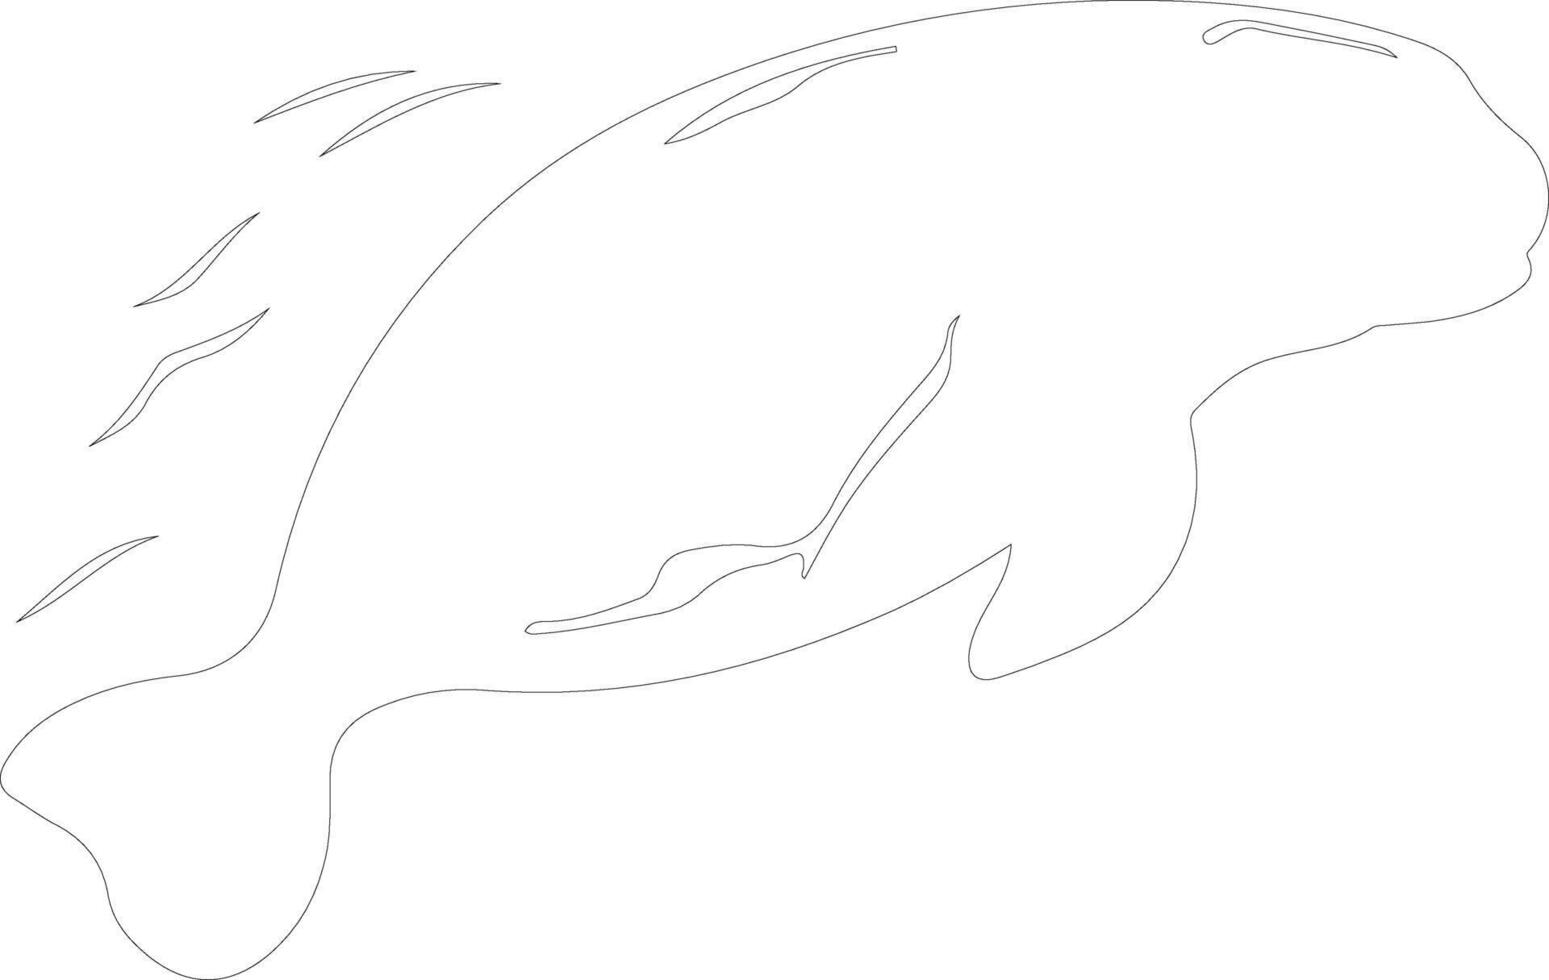 dugong contour silhouette vecteur